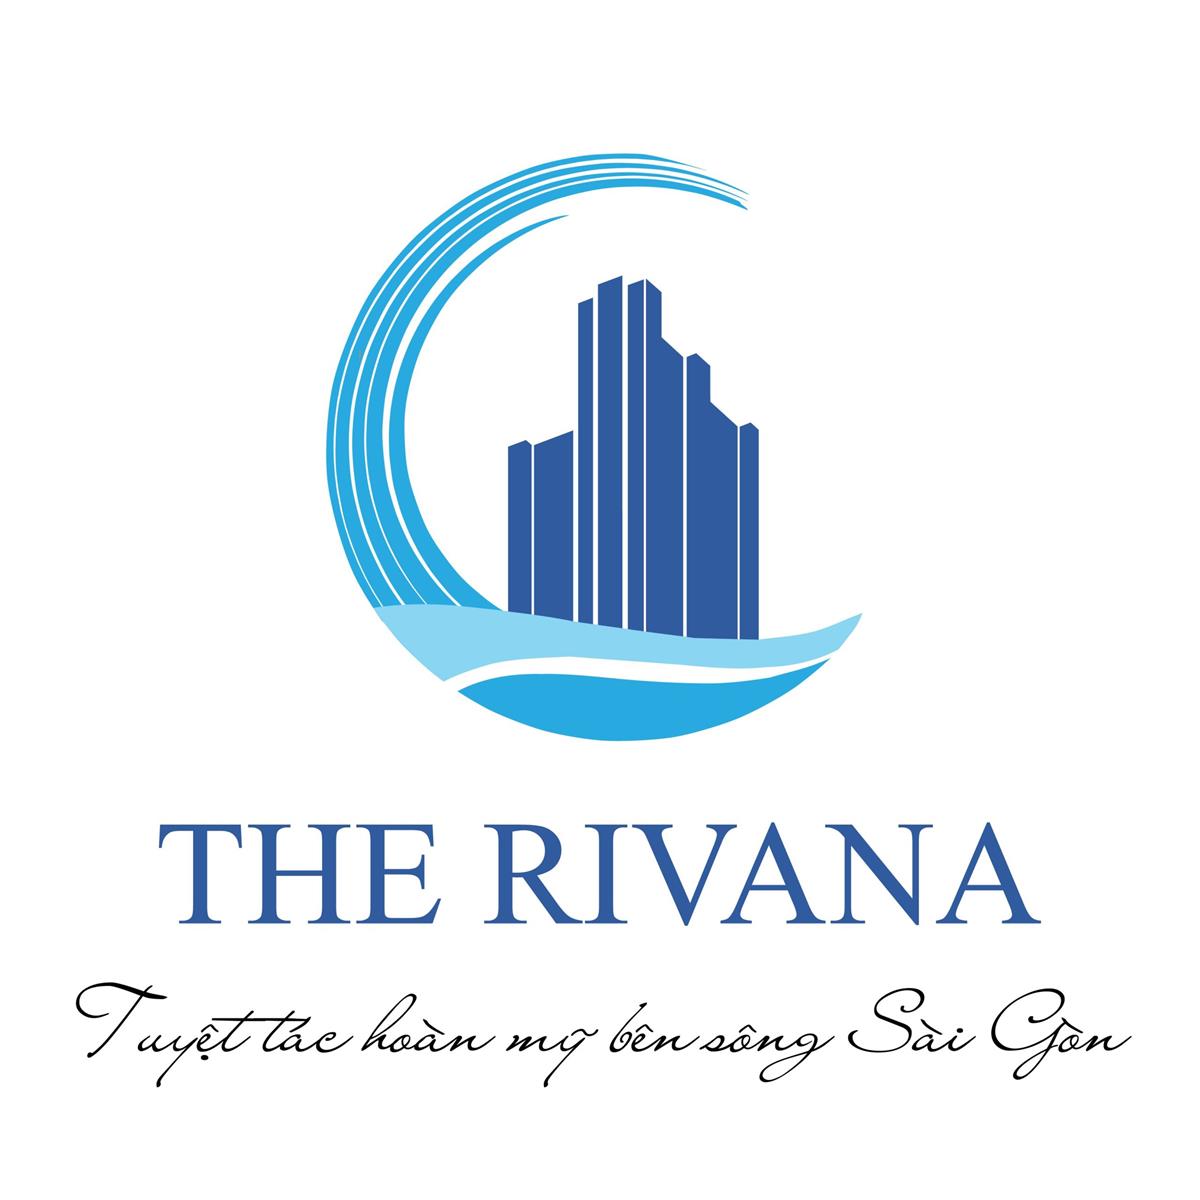 IMG 20201117 173142 scaled - CĂN HỘ THE RIVANA BÌNH DƯƠNG